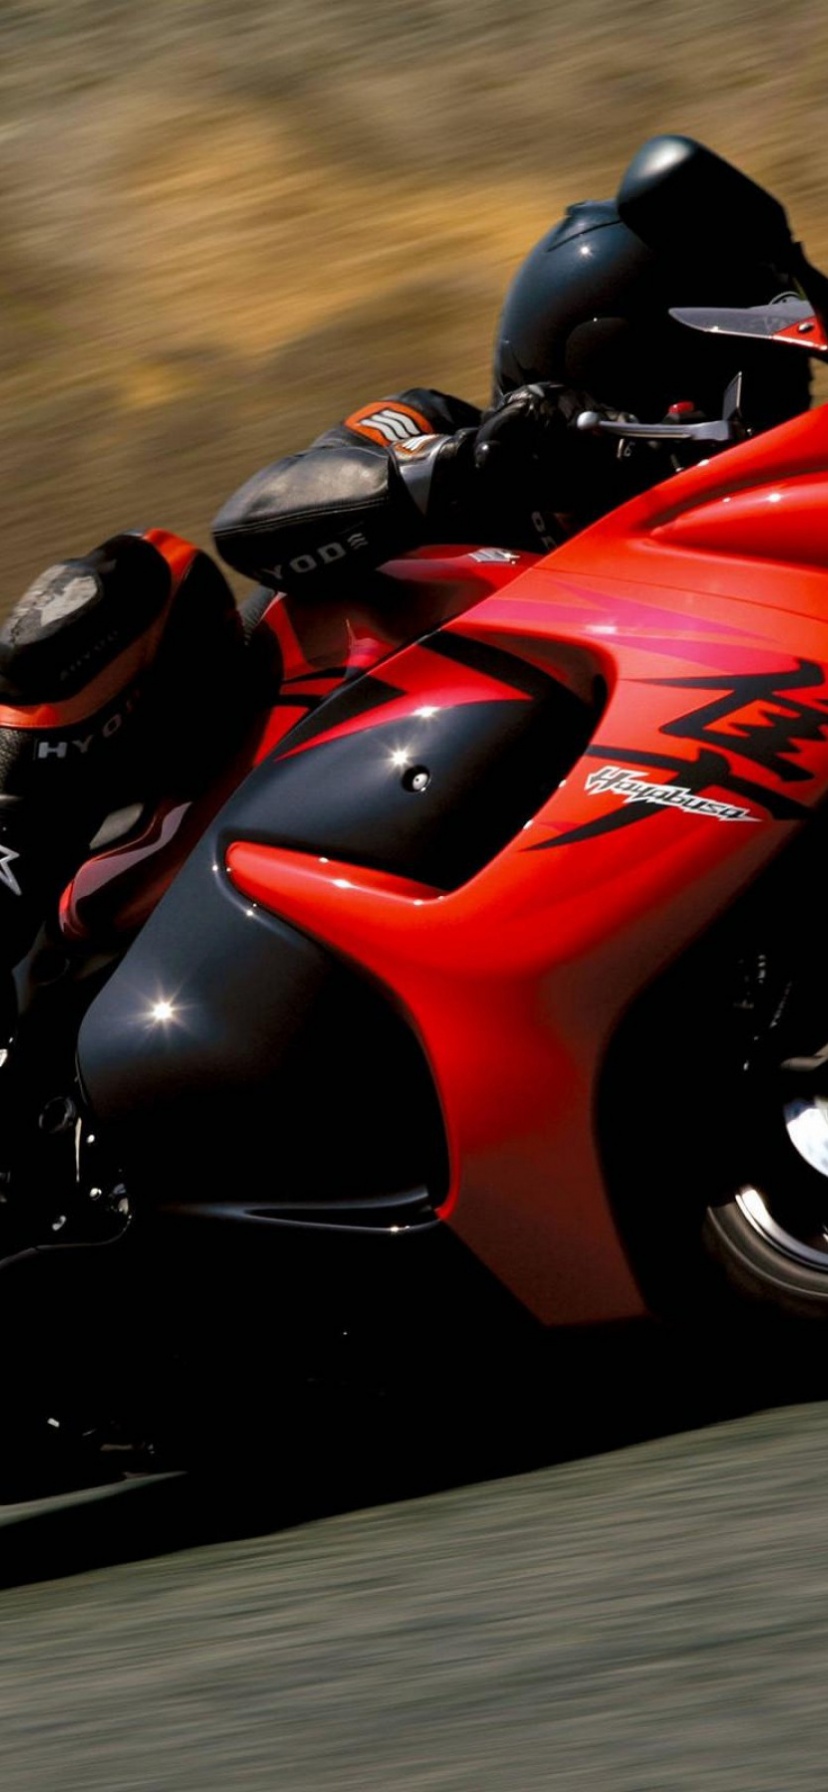 Suzuki Hayabusa Red-Black